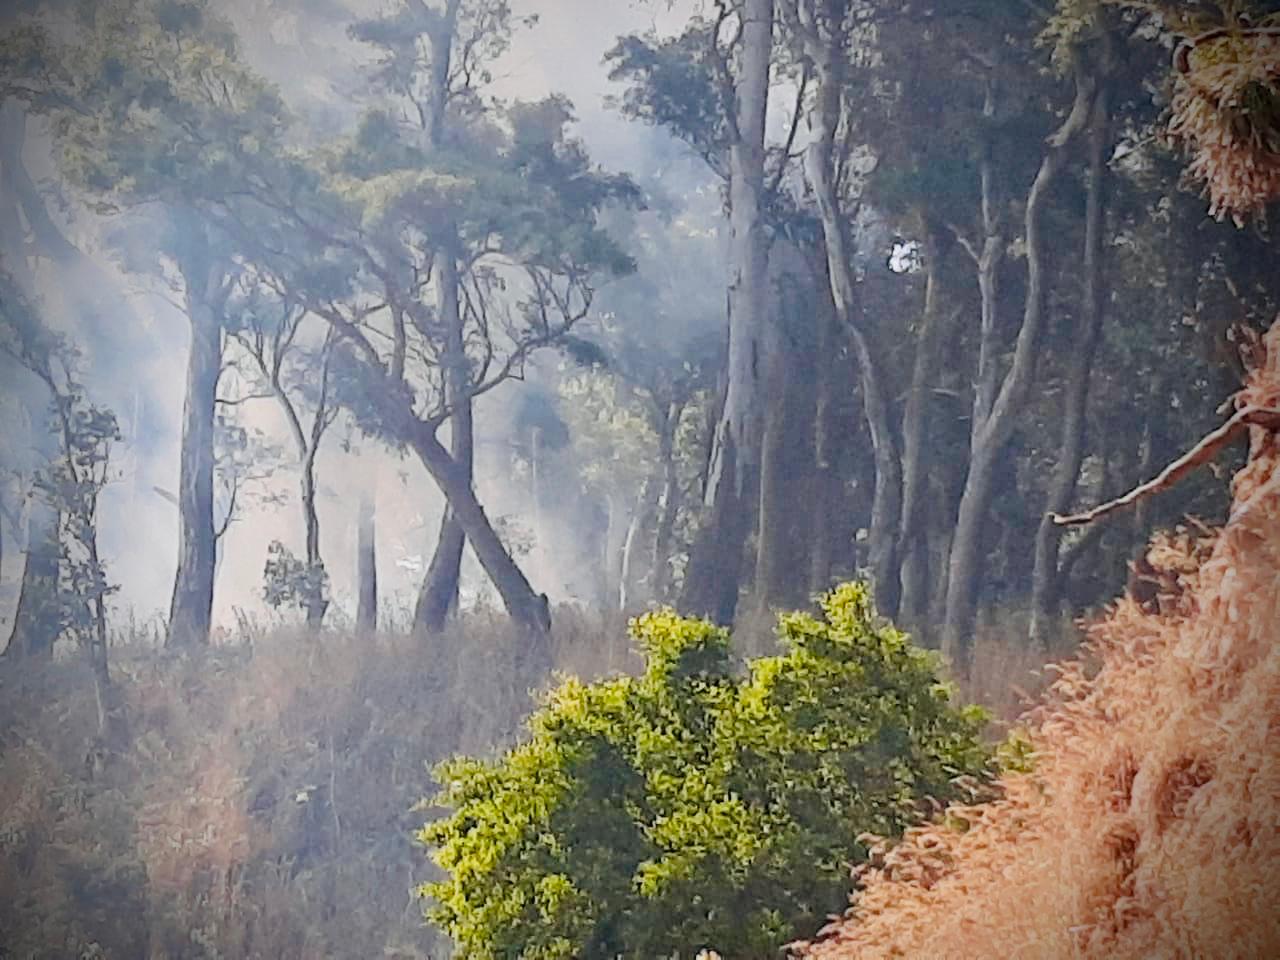 El municipio solicita extremar cuidados para evitar incendios forestales y de pastizales